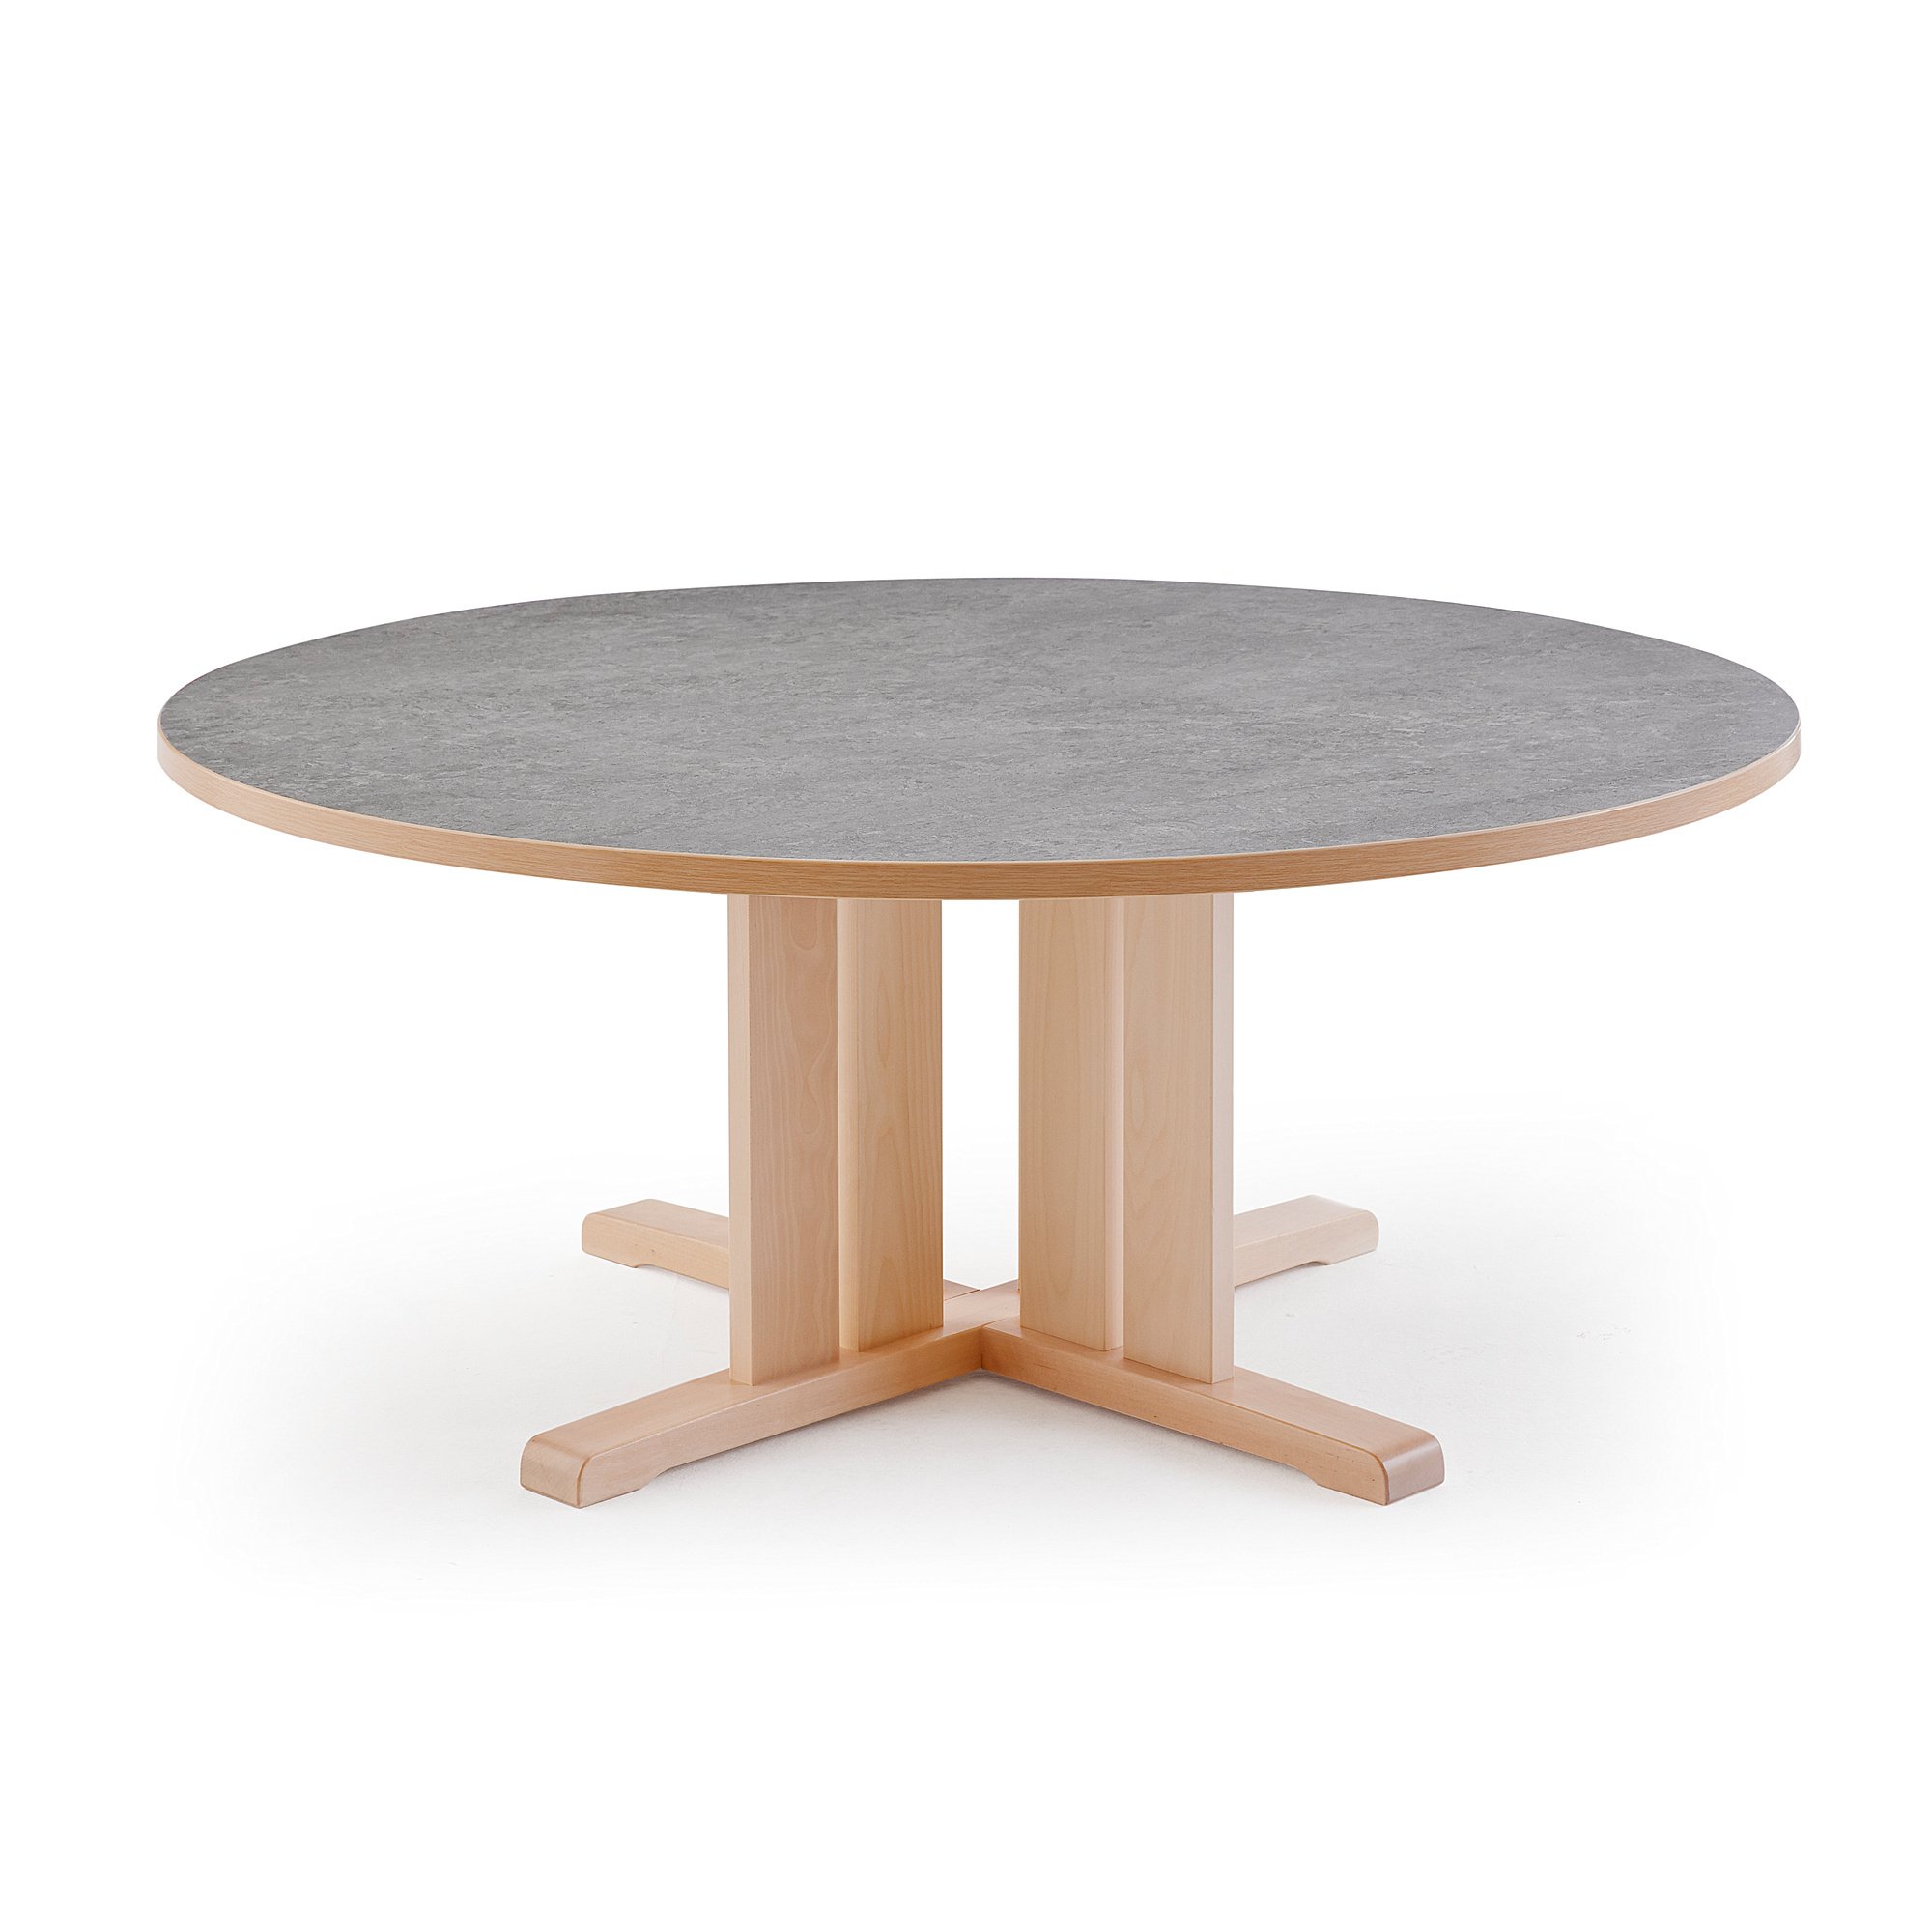 Stůl KUPOL, Ø1300x600 mm, akustické linoleum, bříza/šedá